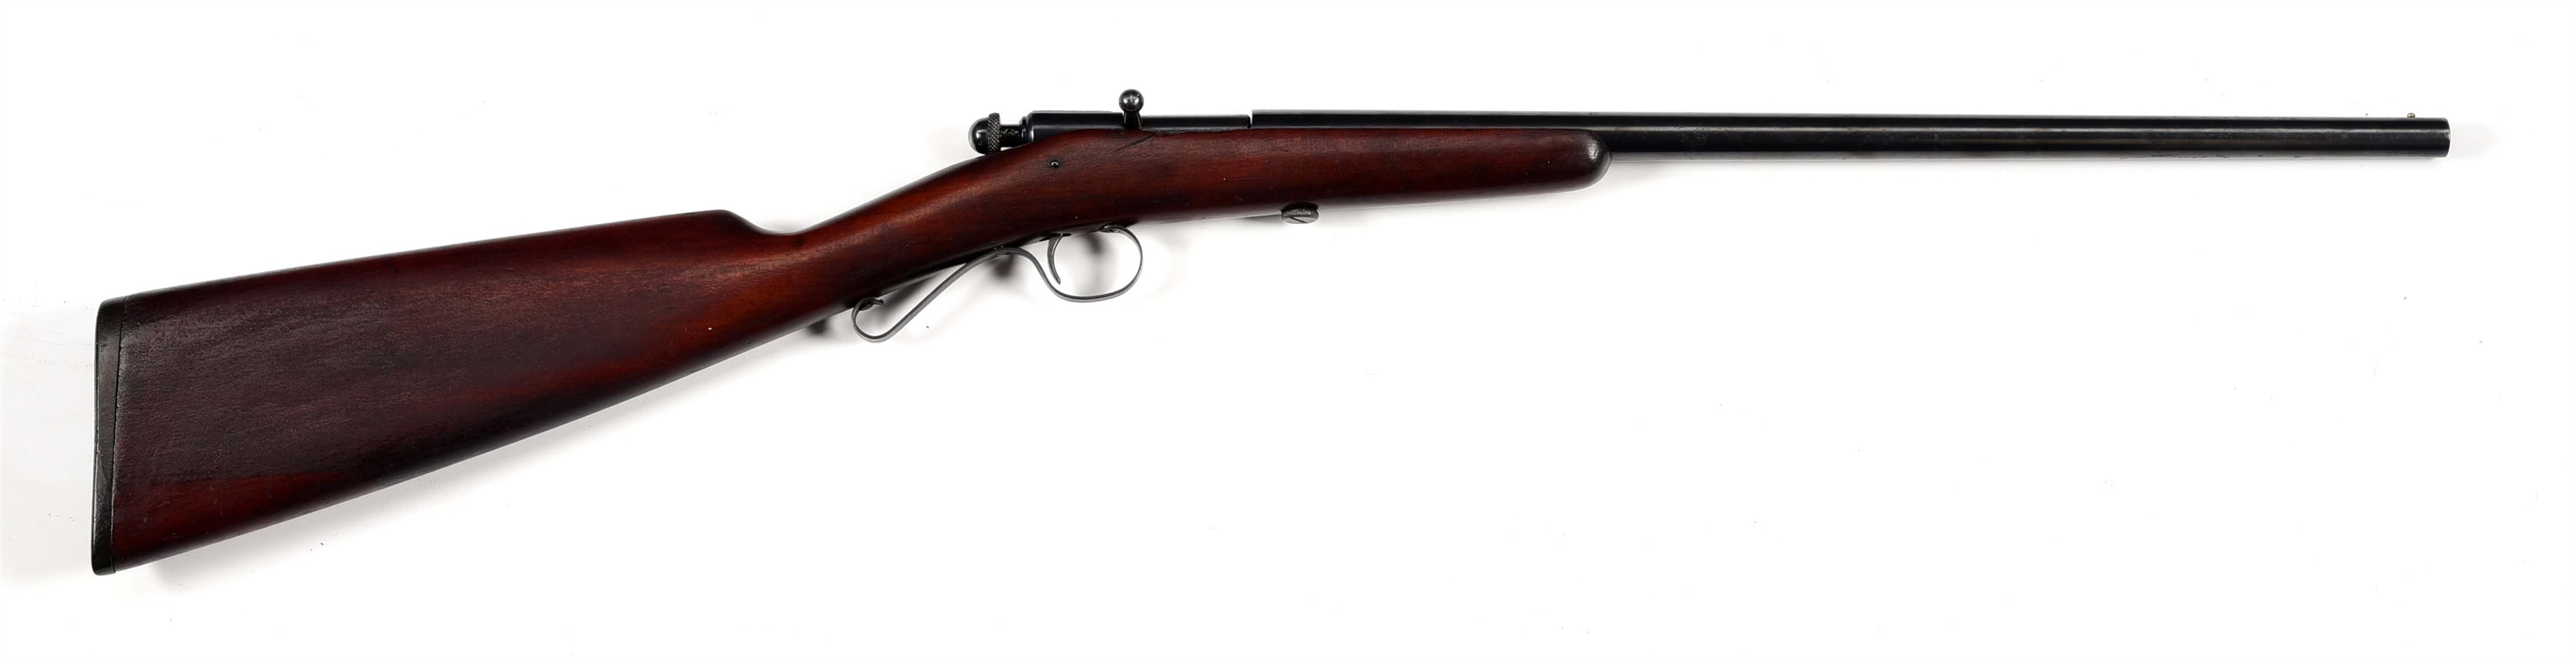 (C) WINCHESTER MODEL 36 "GARDEN GUN" 9MM BOLT ACTION SHOTGUN WITH VINTAGE AMMUNITION.